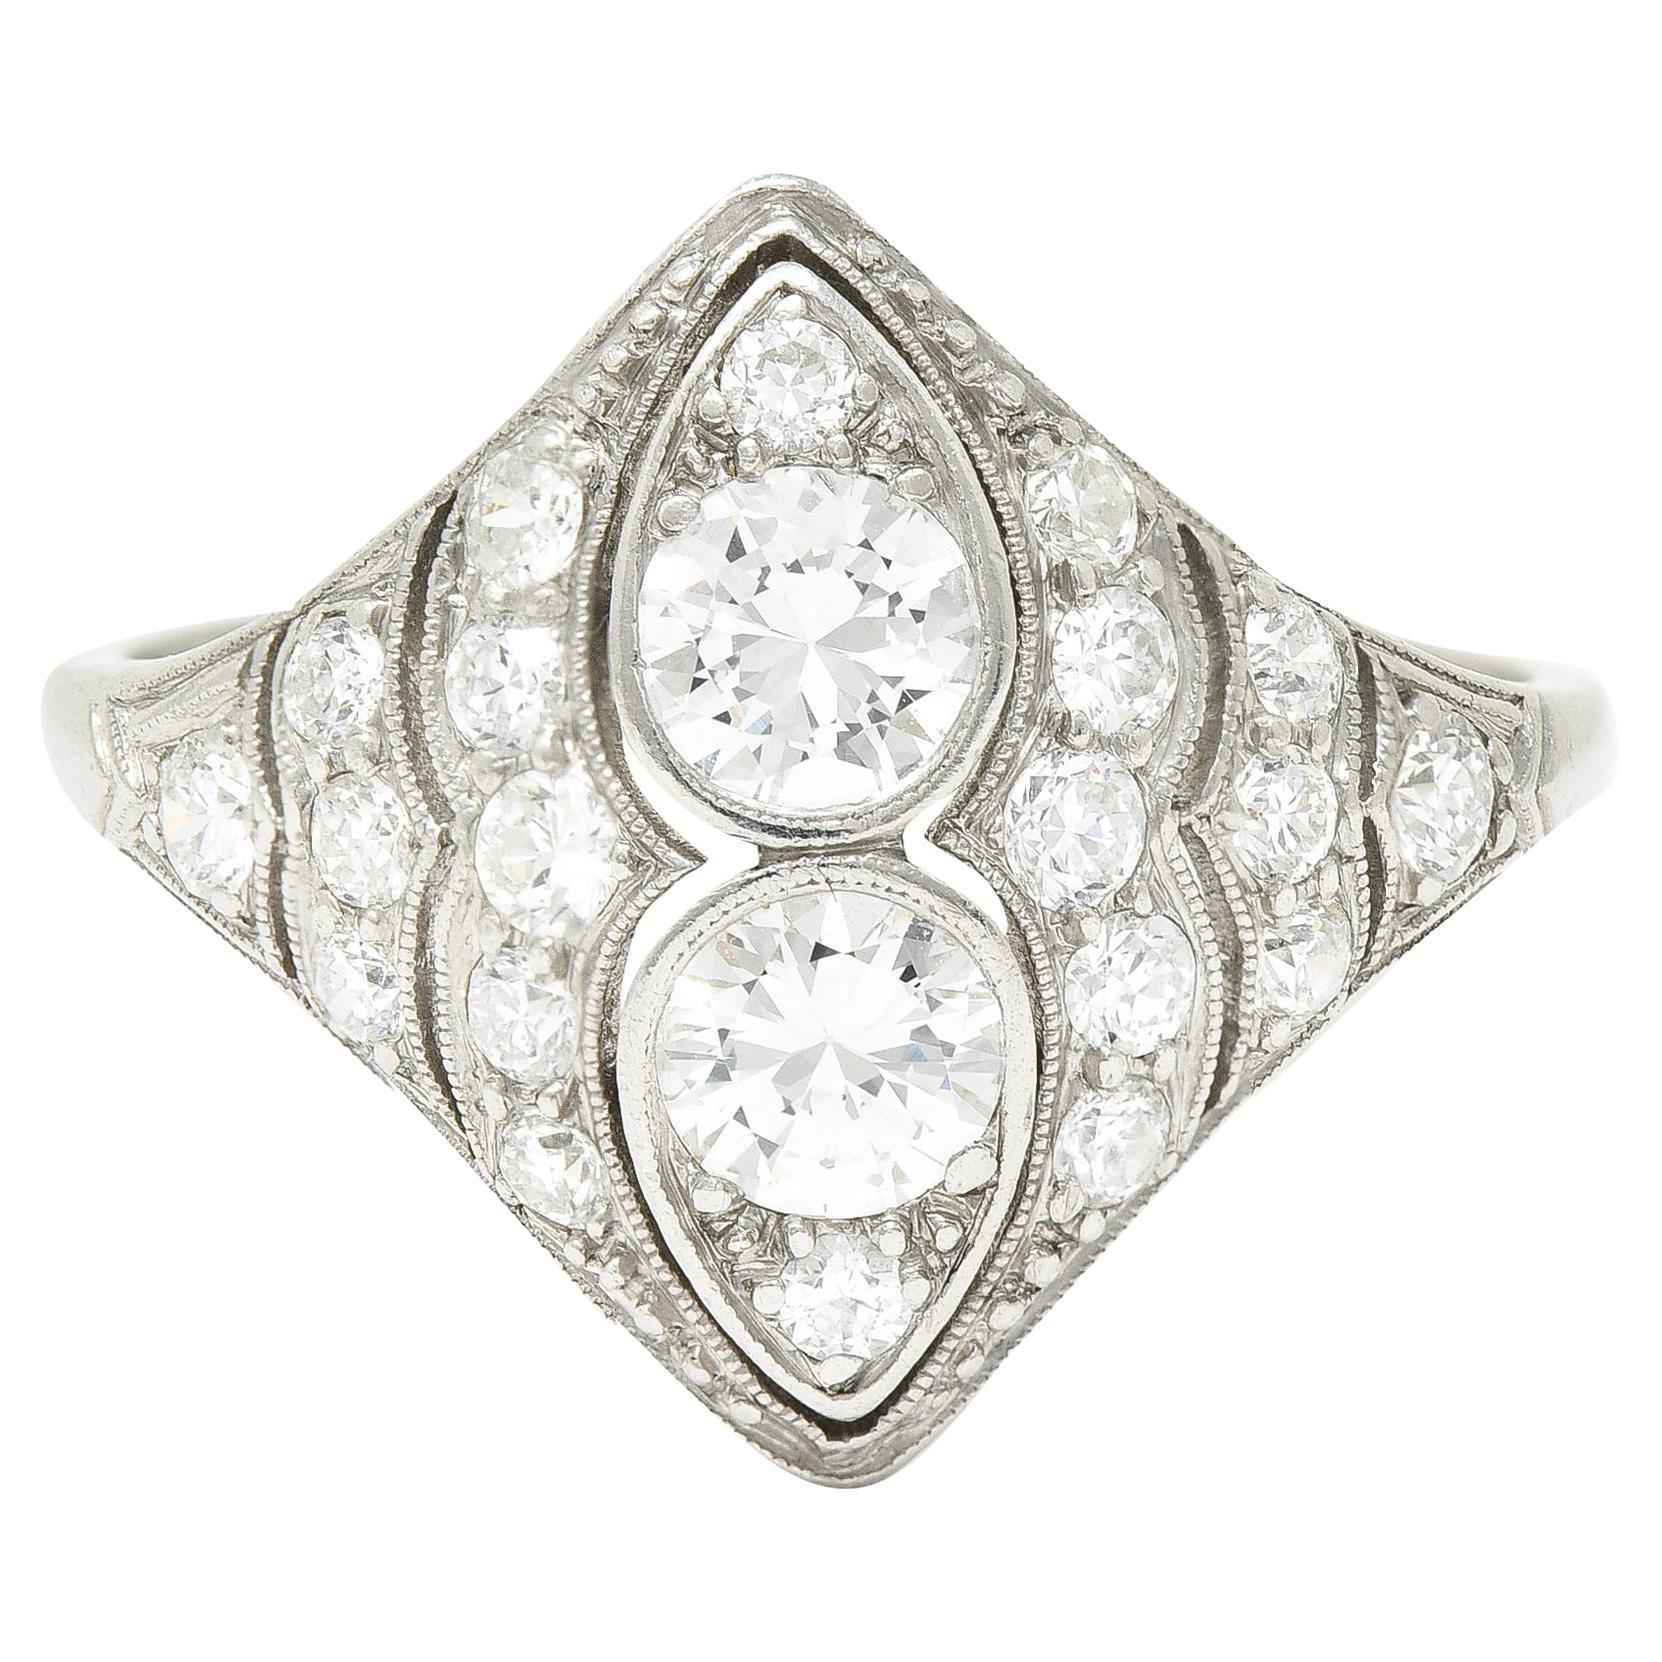 WM Wise Art Deco 1.18 Carat Old European Cut Diamond Platinum Dinner Ring